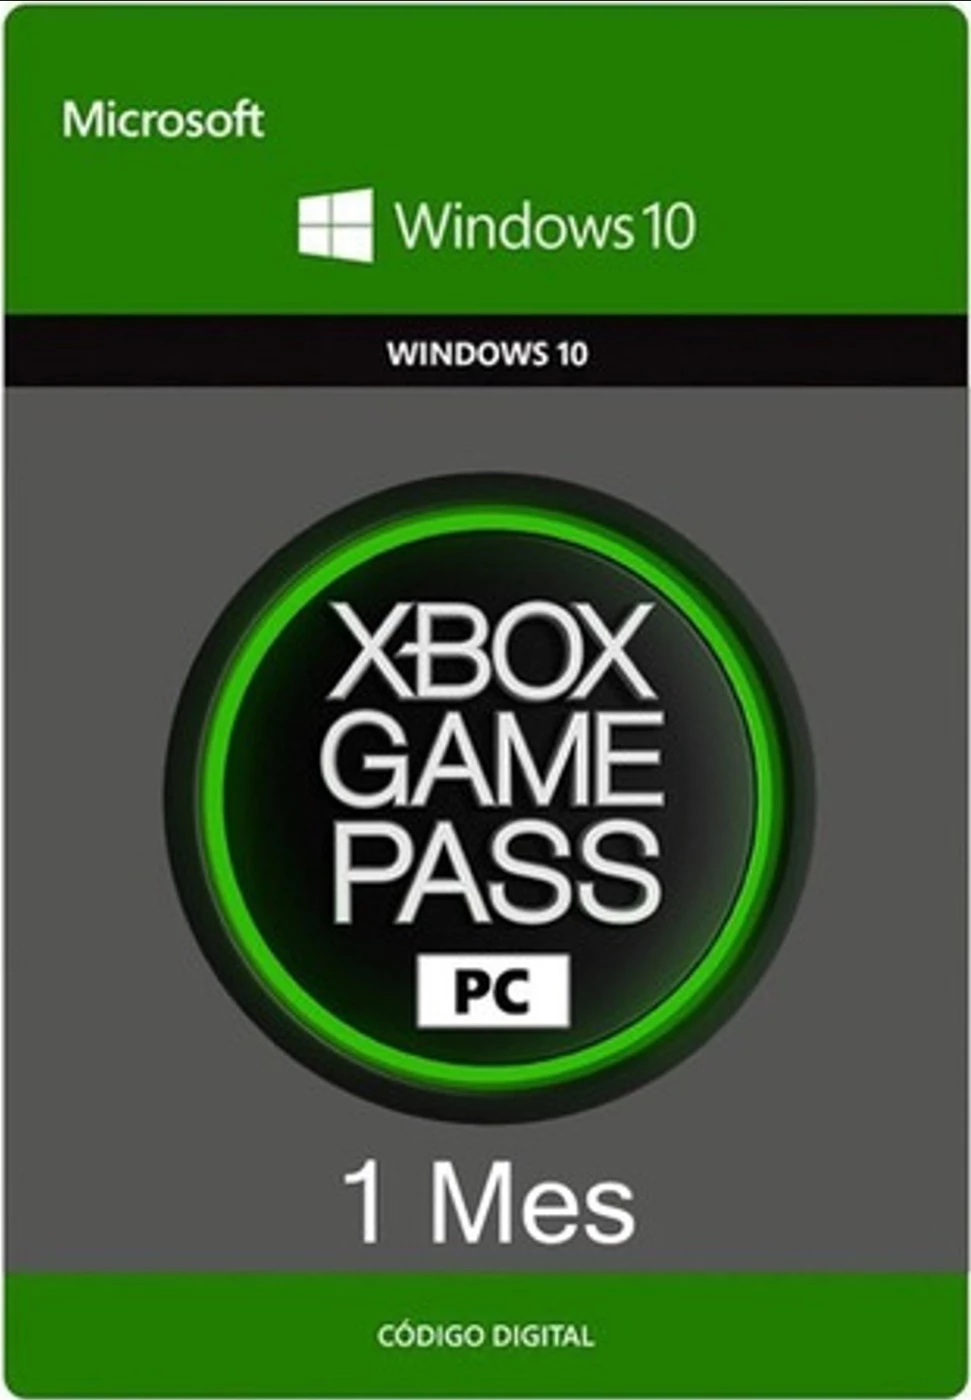 Game Pass Ultimate Xbox 1 Mês 25 Codigos - Envio Imediato!!!